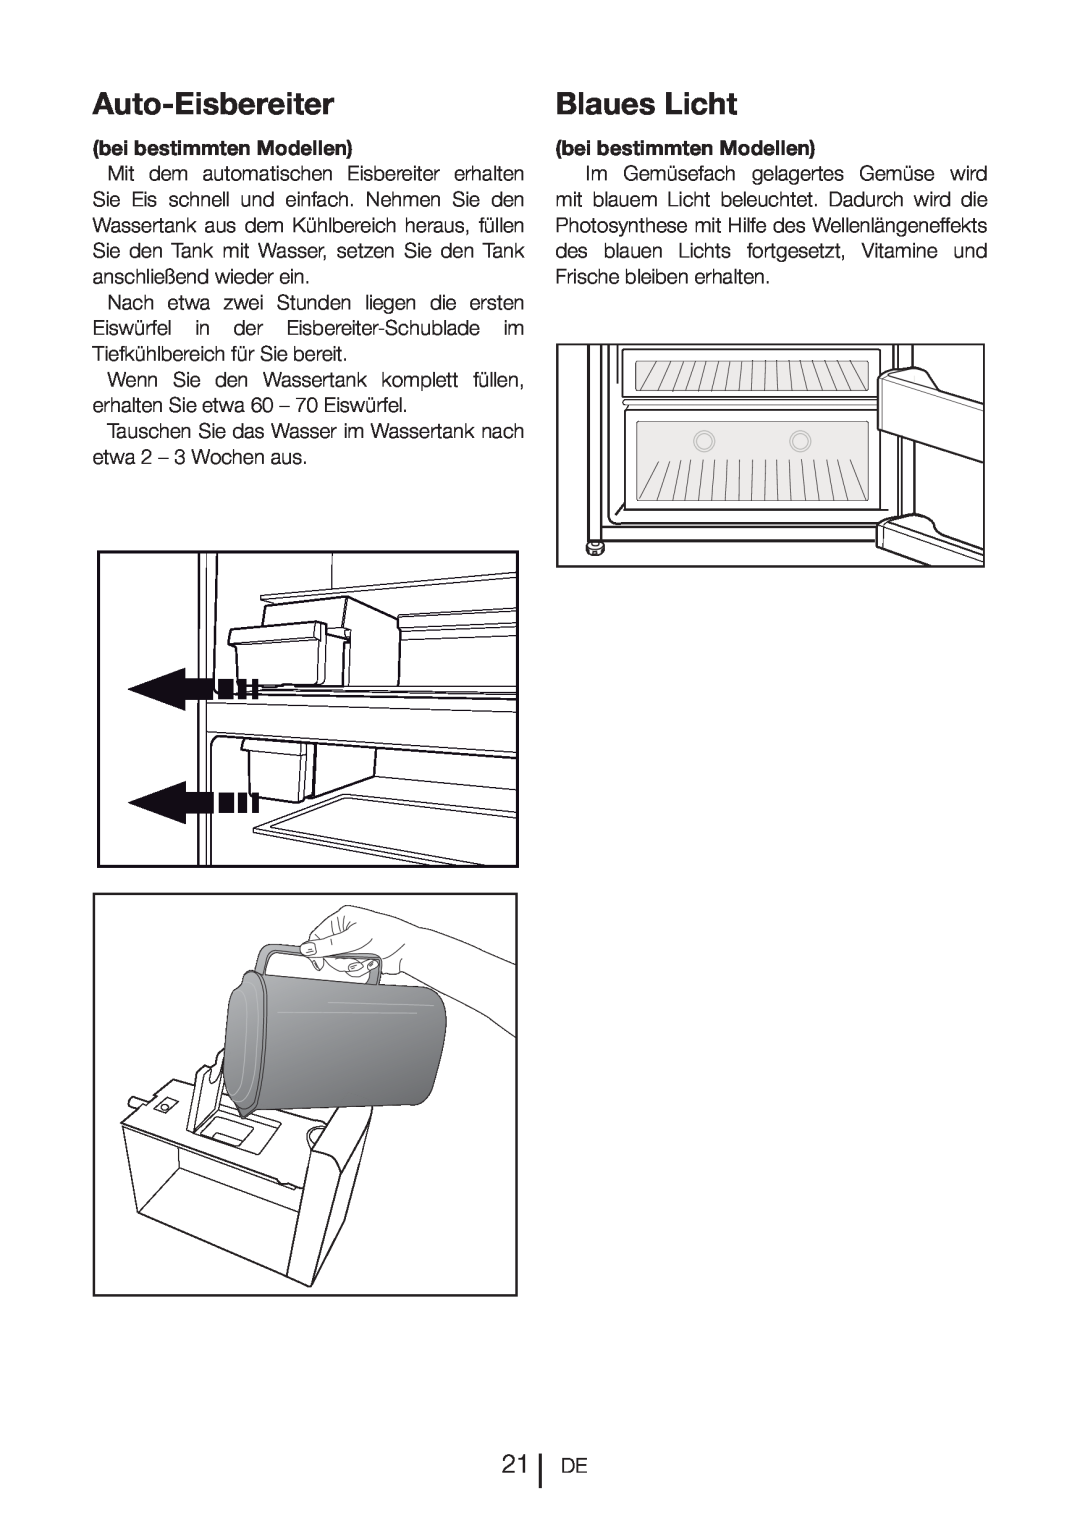 Blomberg DND 9977 PD manual Auto-Eisbereiter, Blaues Licht, bei bestimmten Modellen 